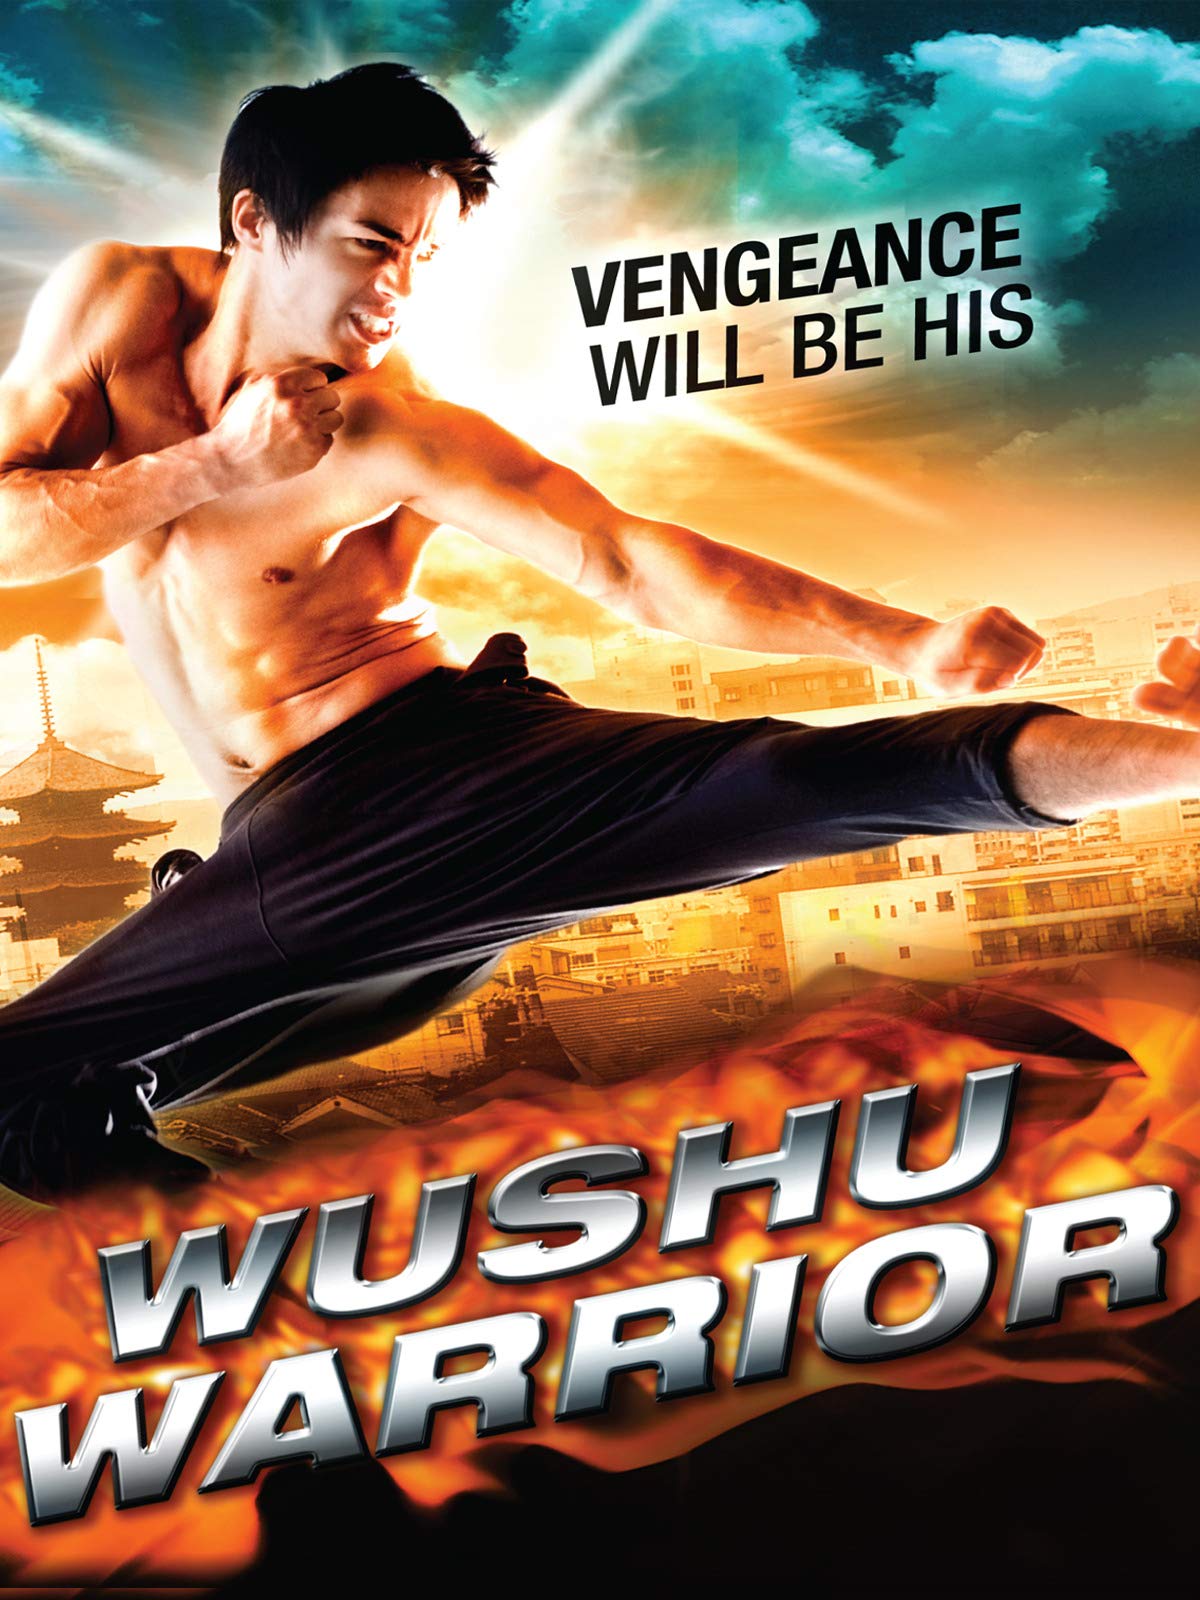 Wushu Warrior (2011) Screenshot 2